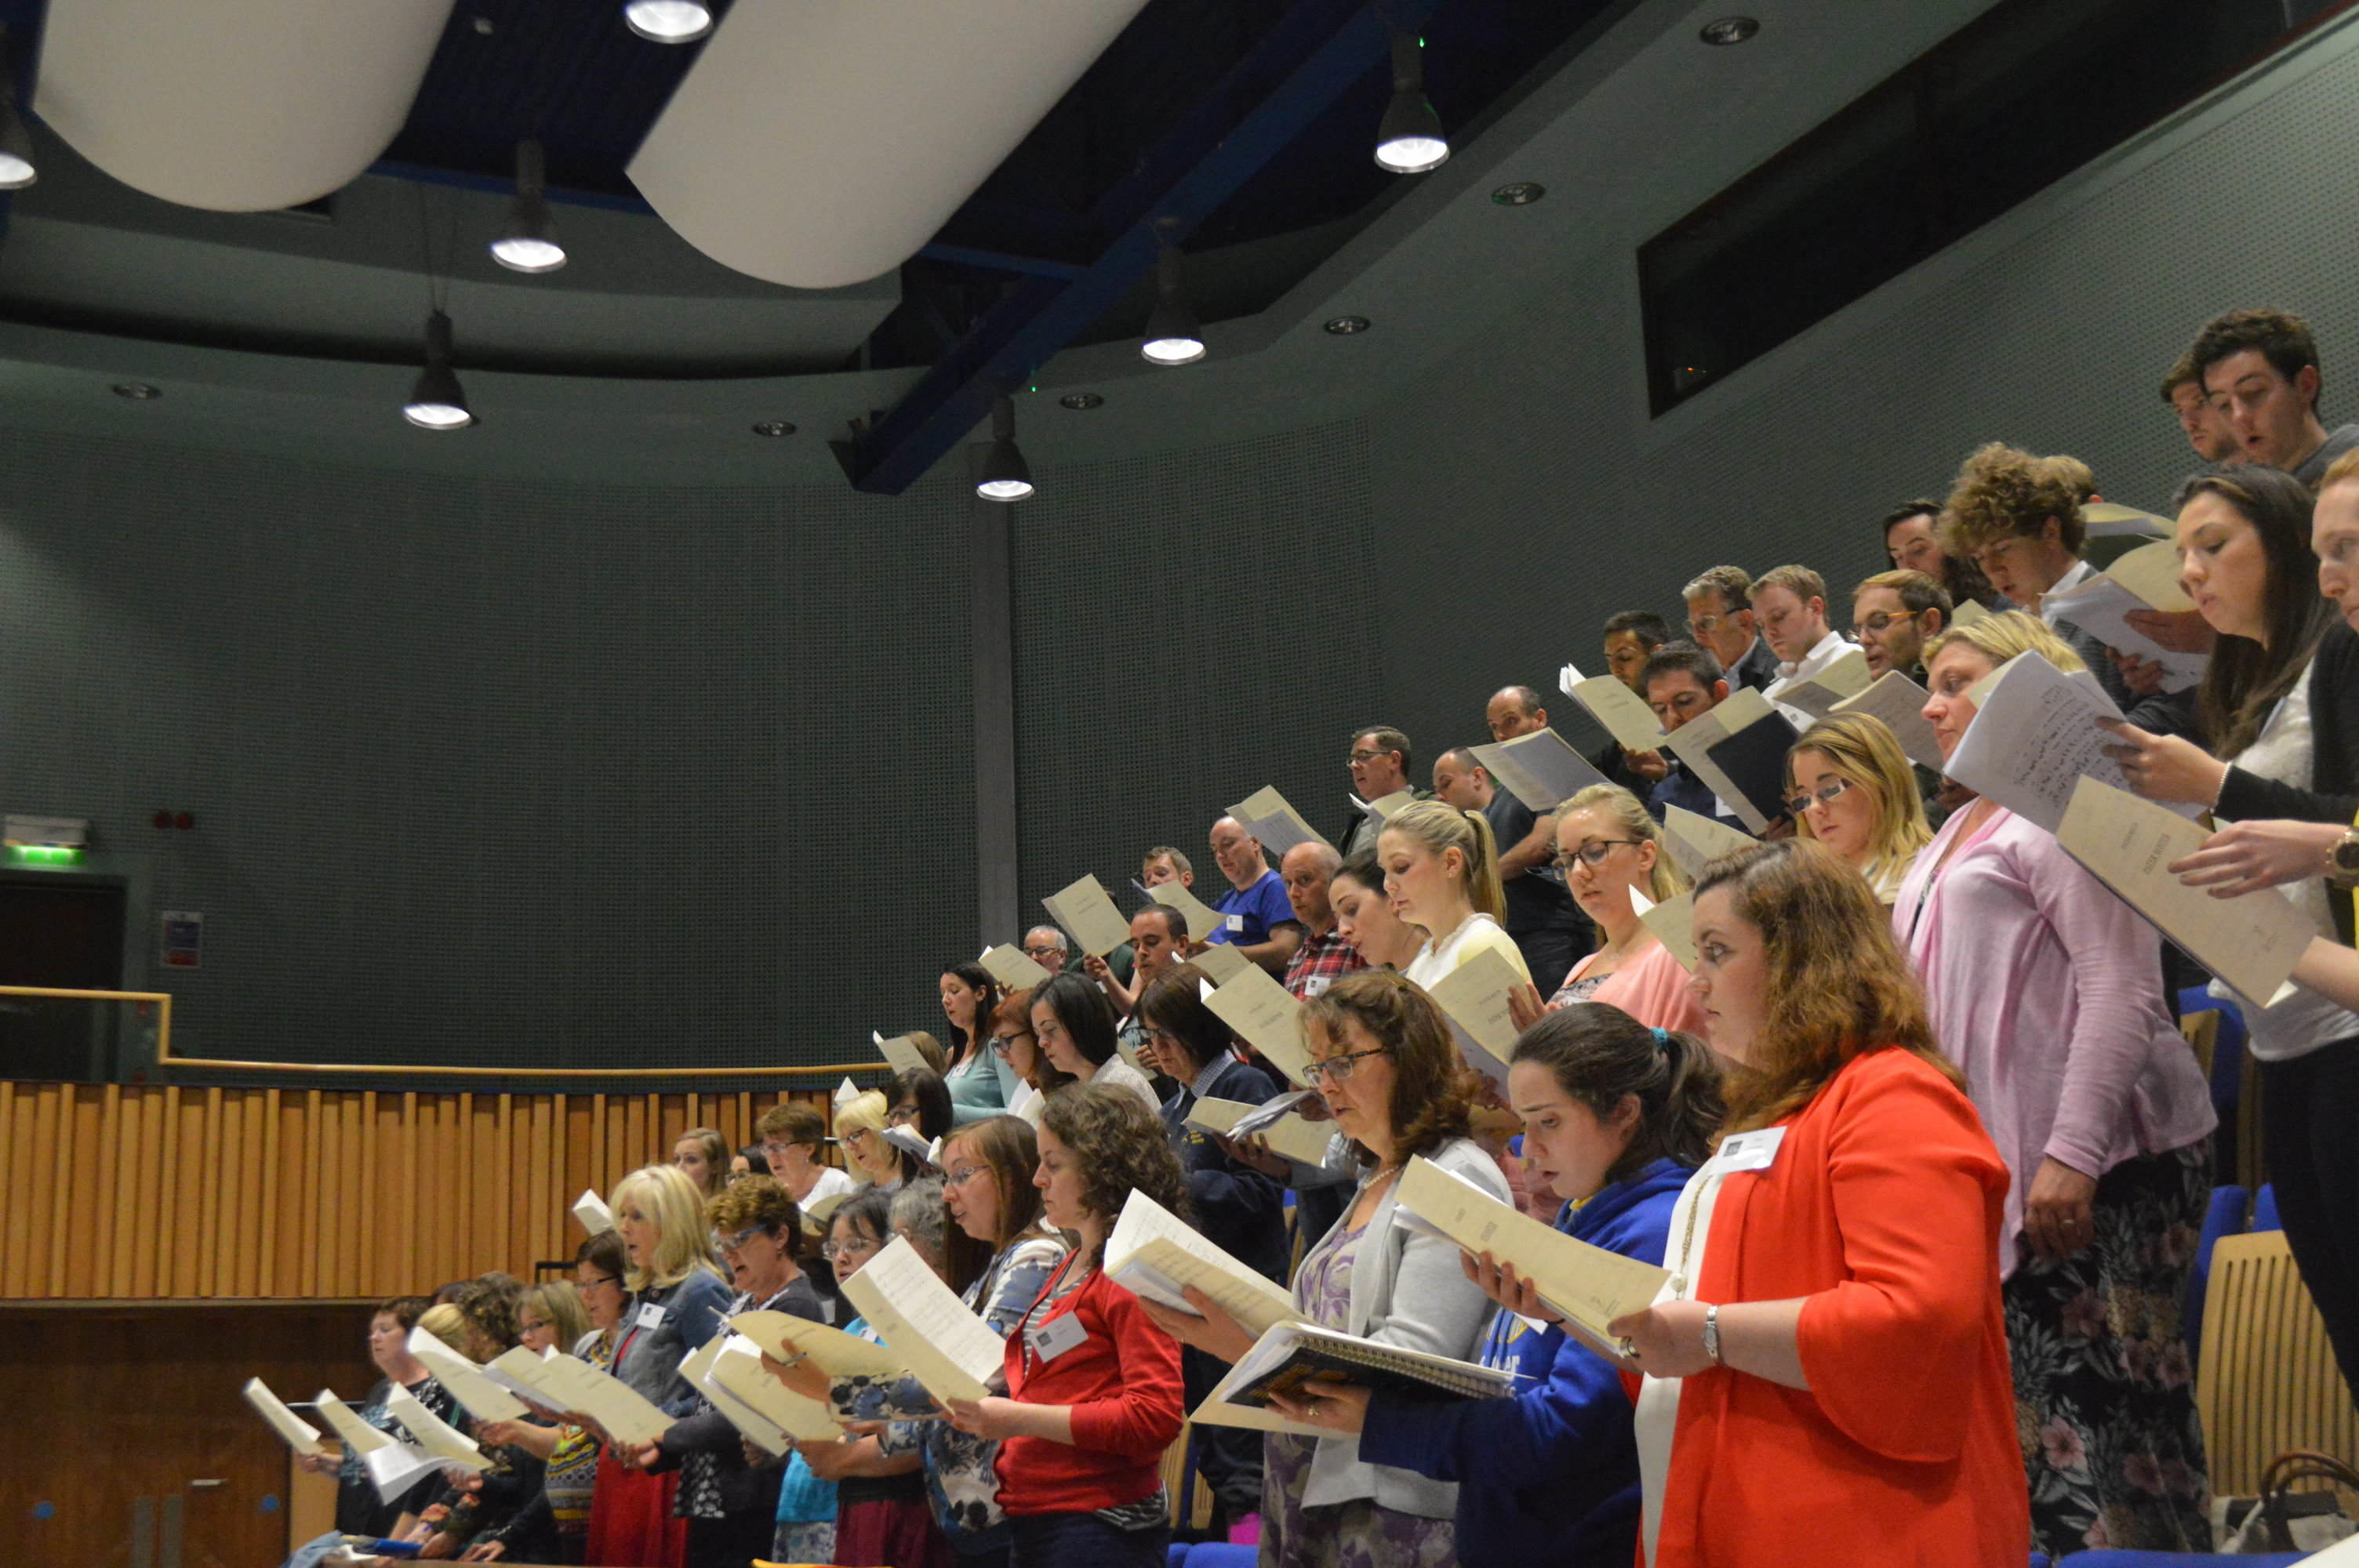 38th International Choral Conducting Summer School